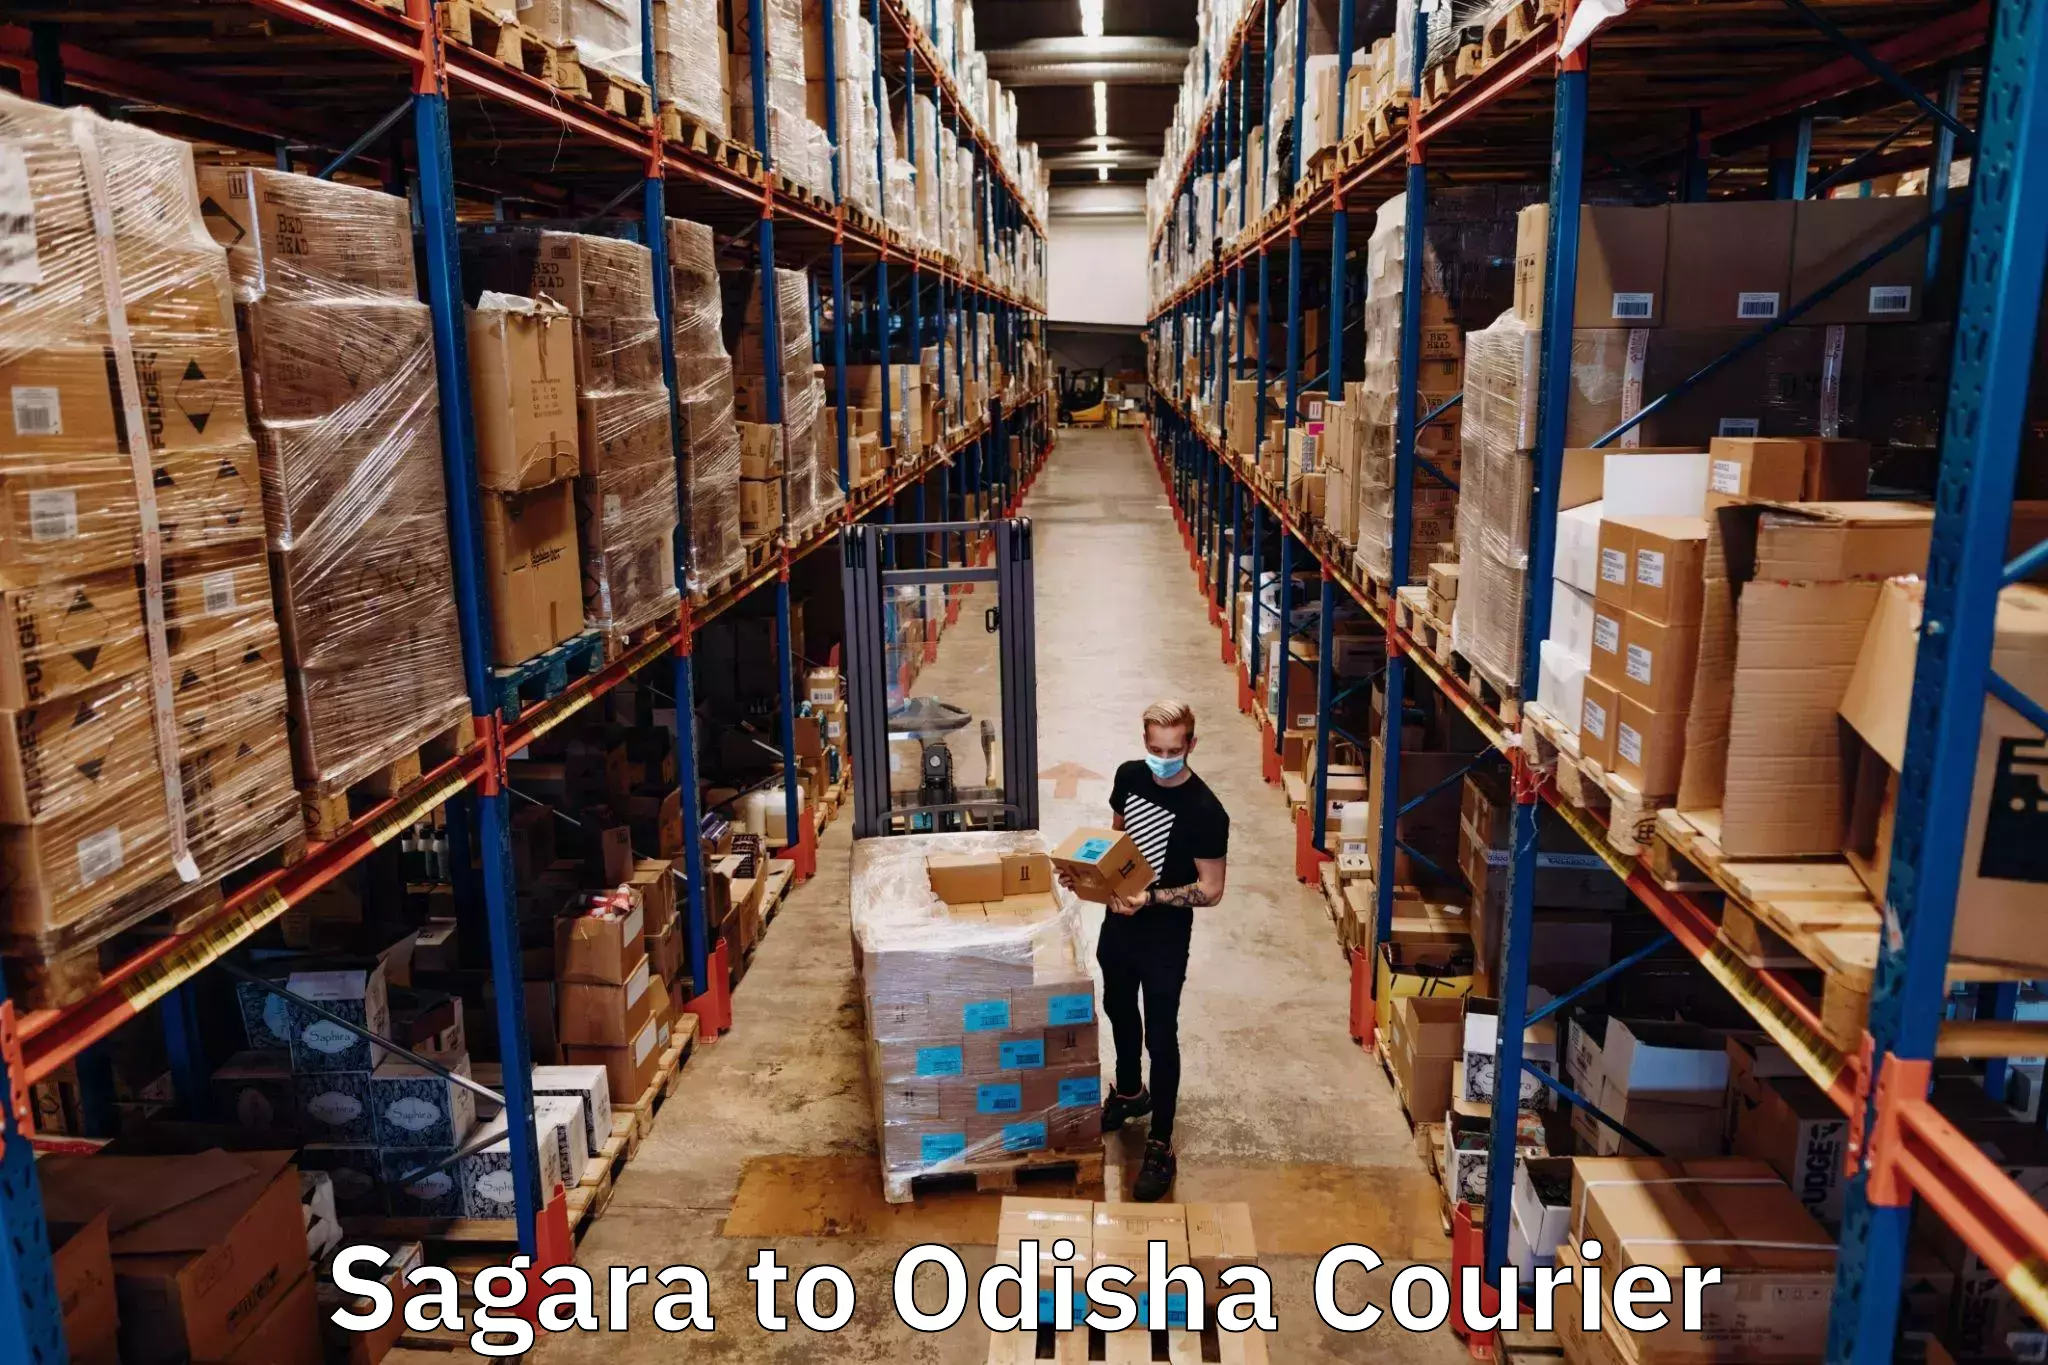 Customer-centric shipping Sagara to Boudh